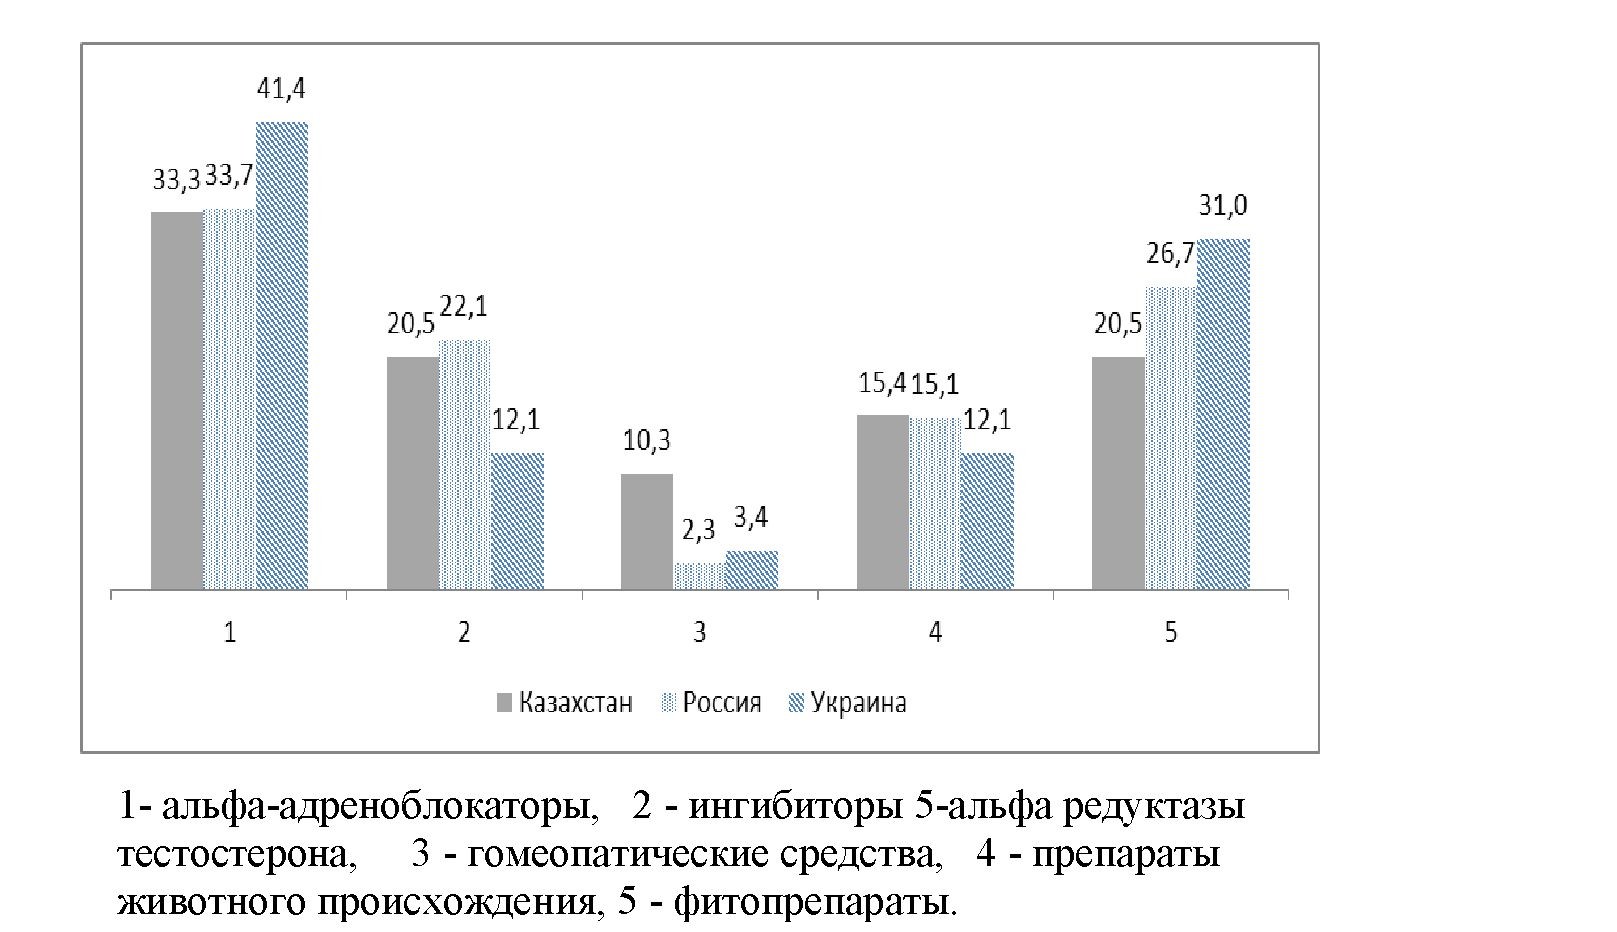 Сравнительный анализ рынка простатопротекторов Казахстана, России и Украины